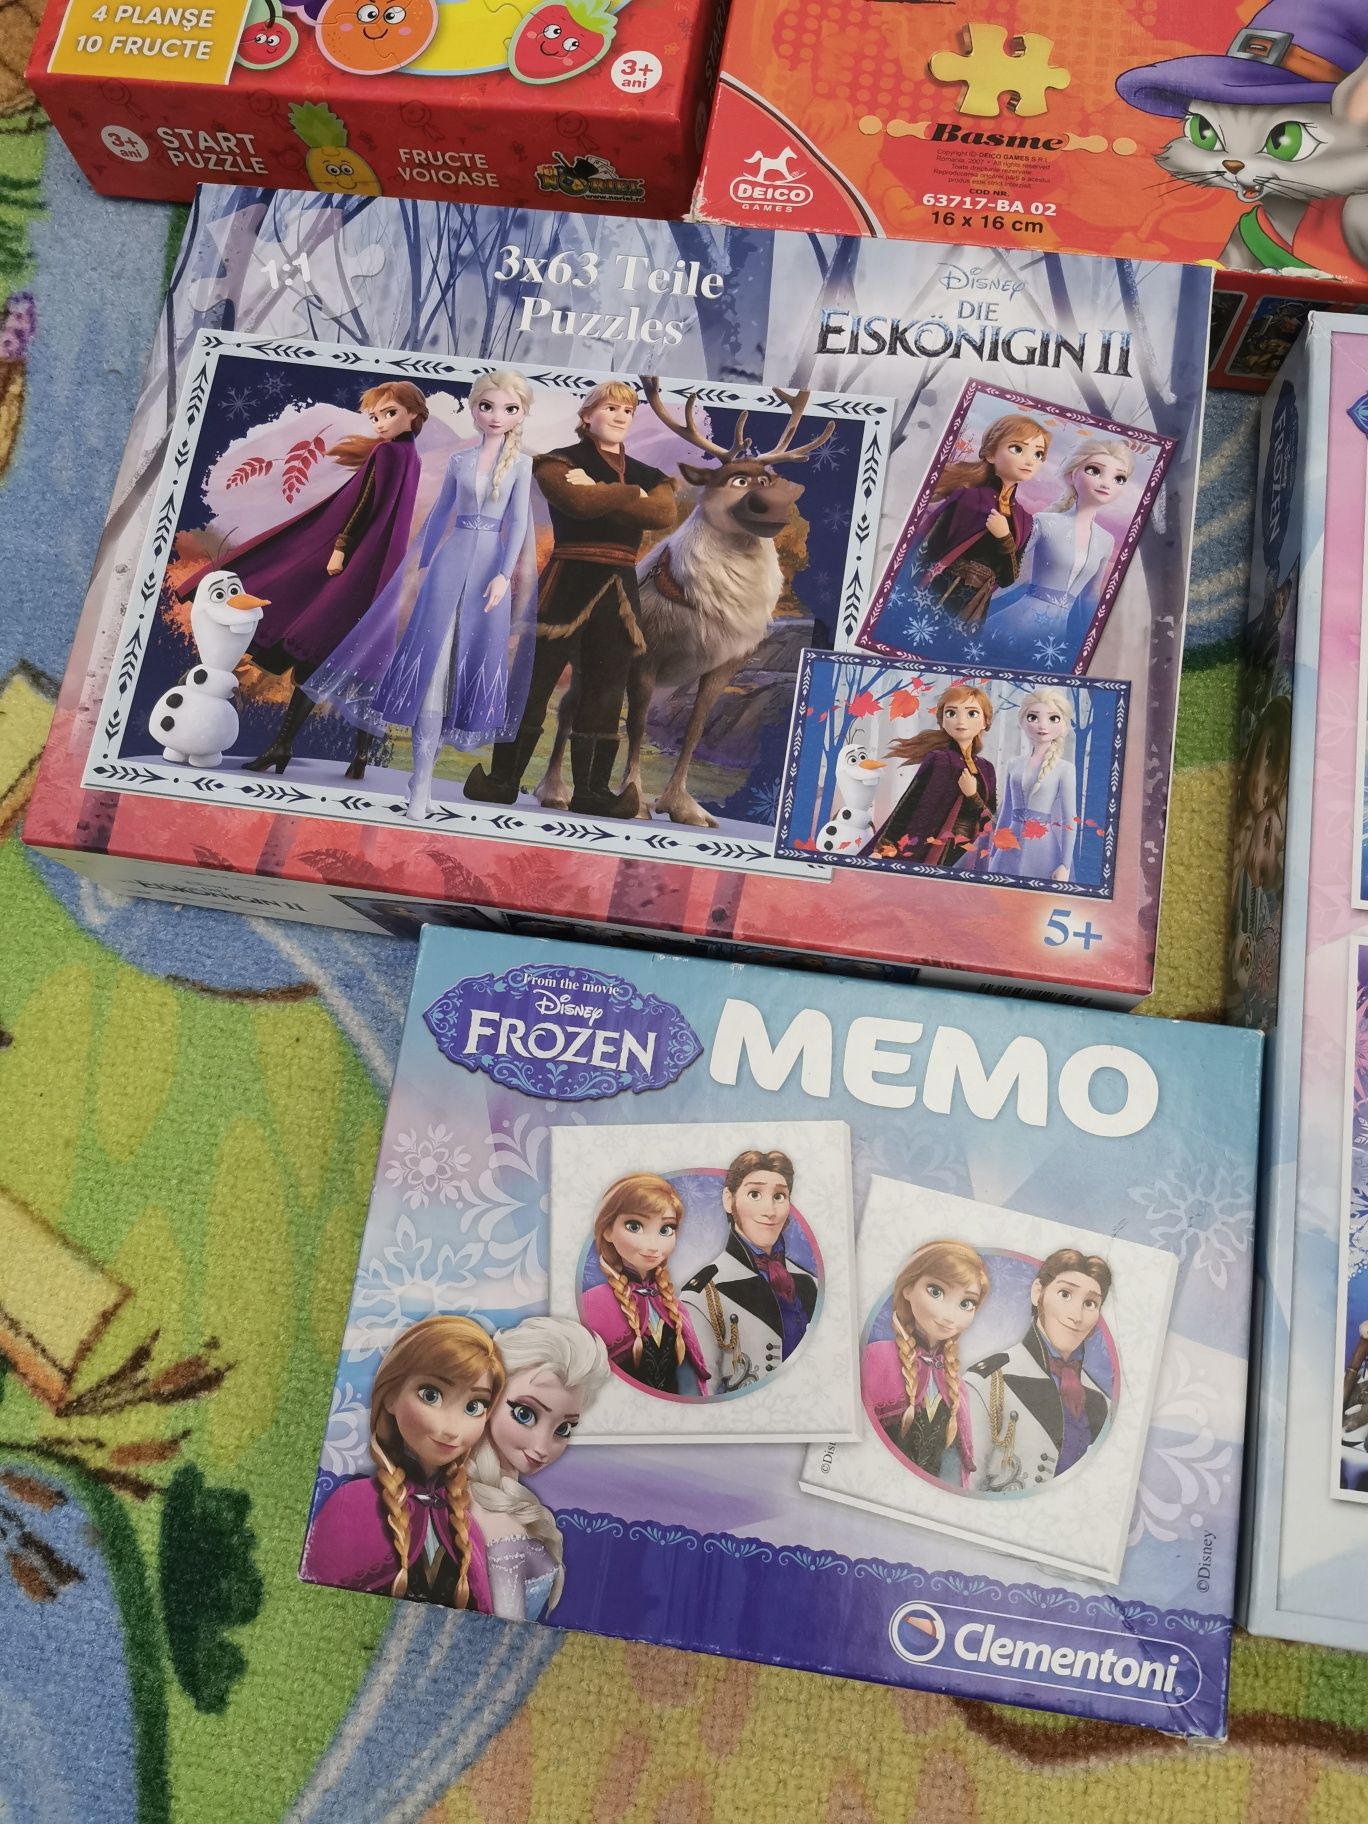 Puzzle povesti, memo, cuburi Frozen, puzzle